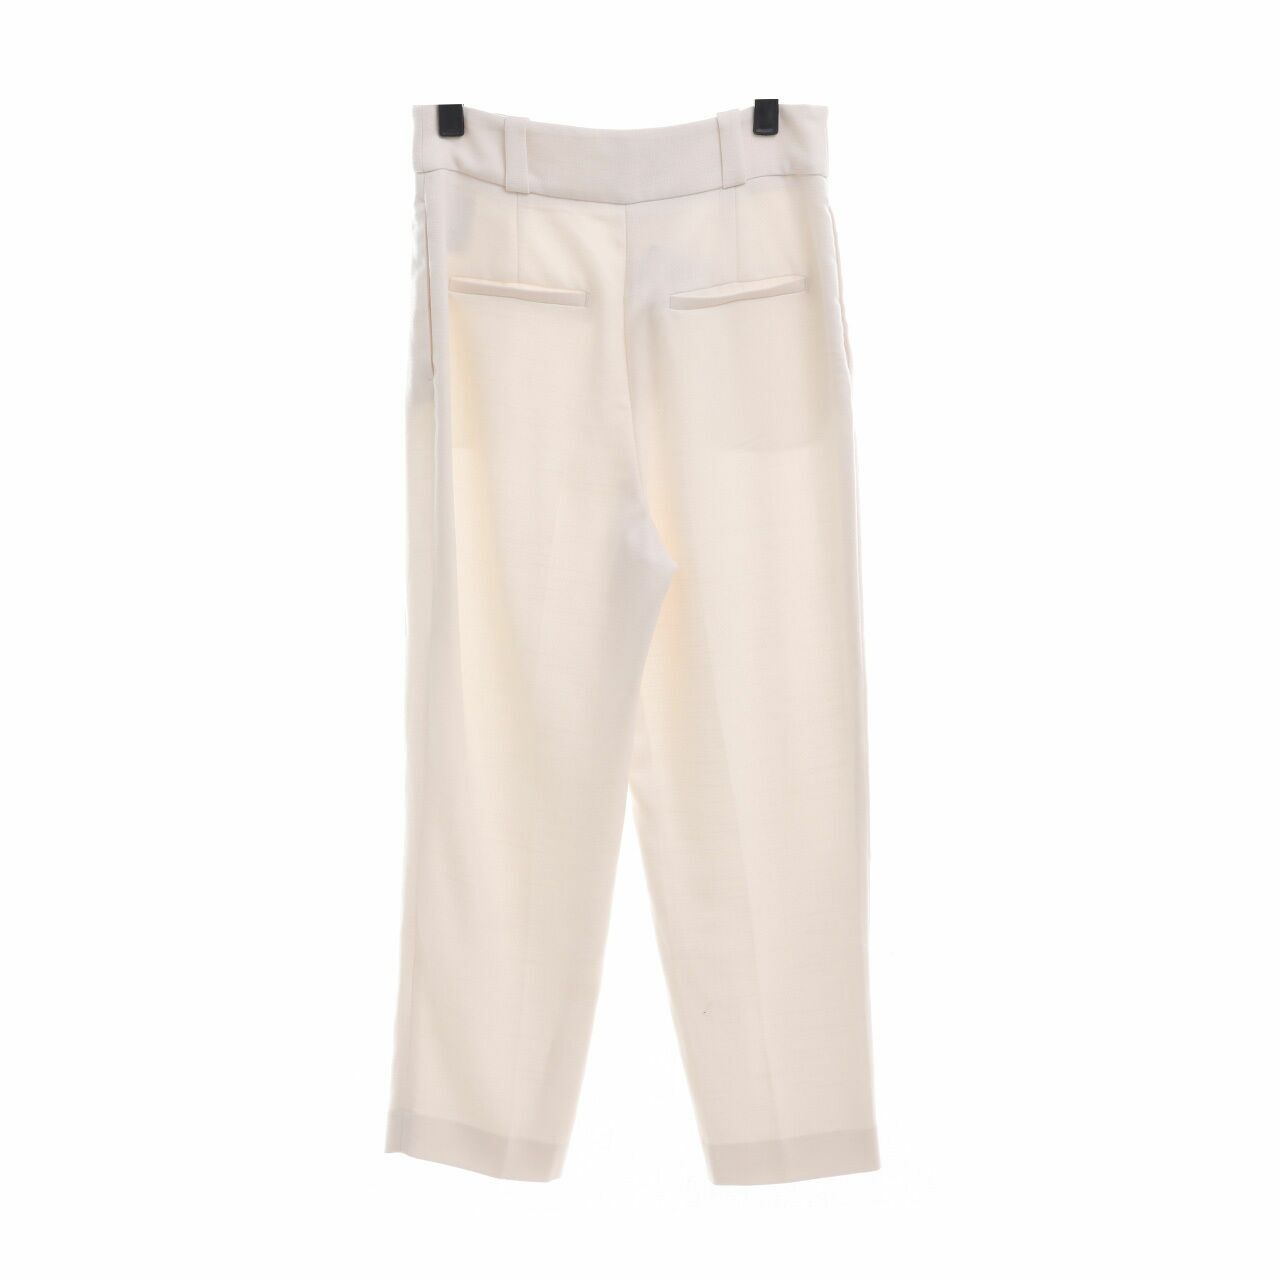 H&M Off White Long Pants